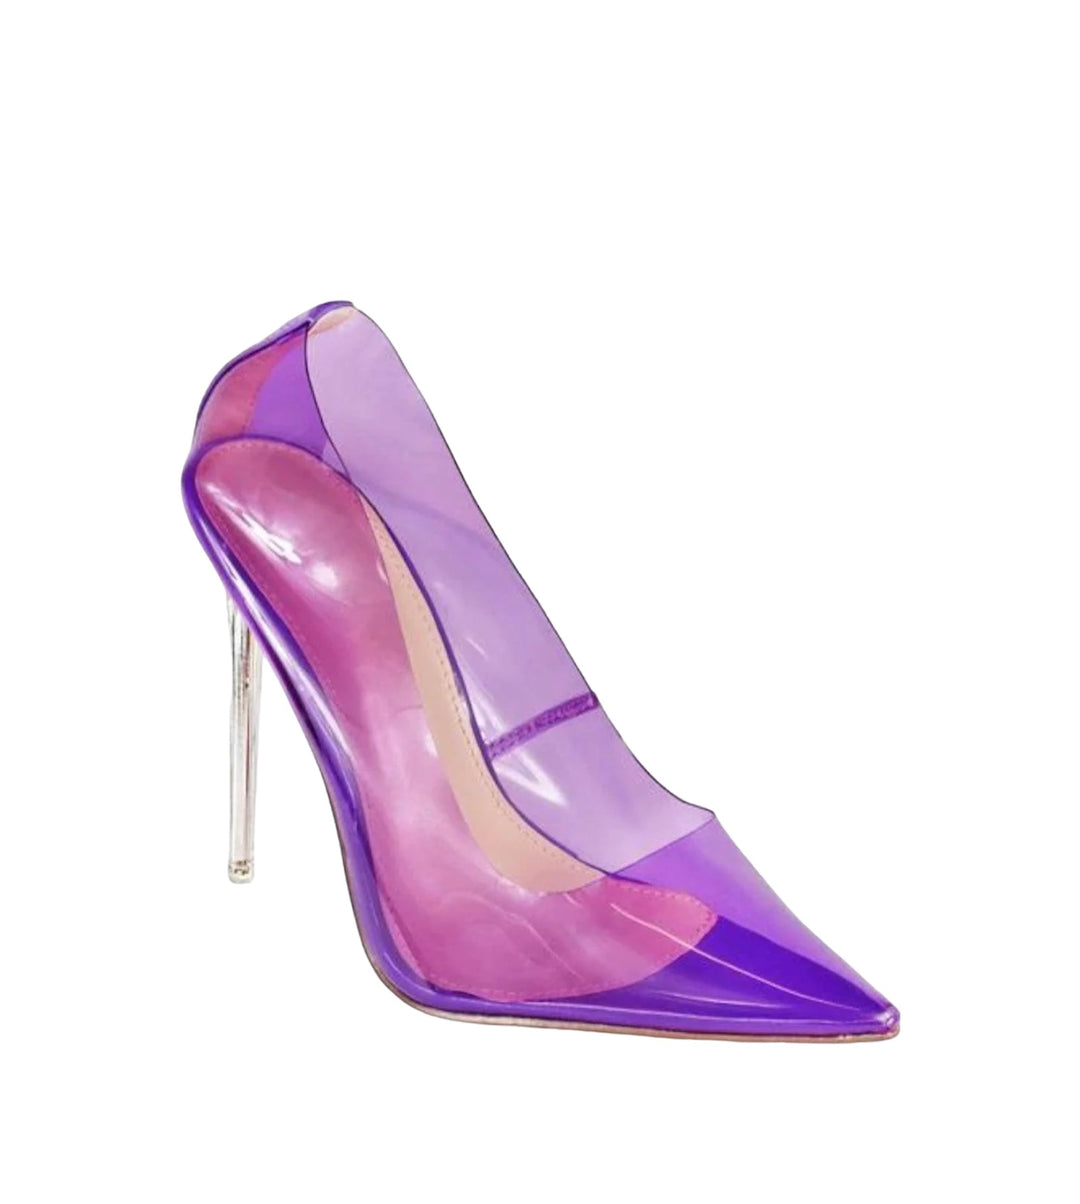 Dollface Clear Heels, Size 8 in Purple